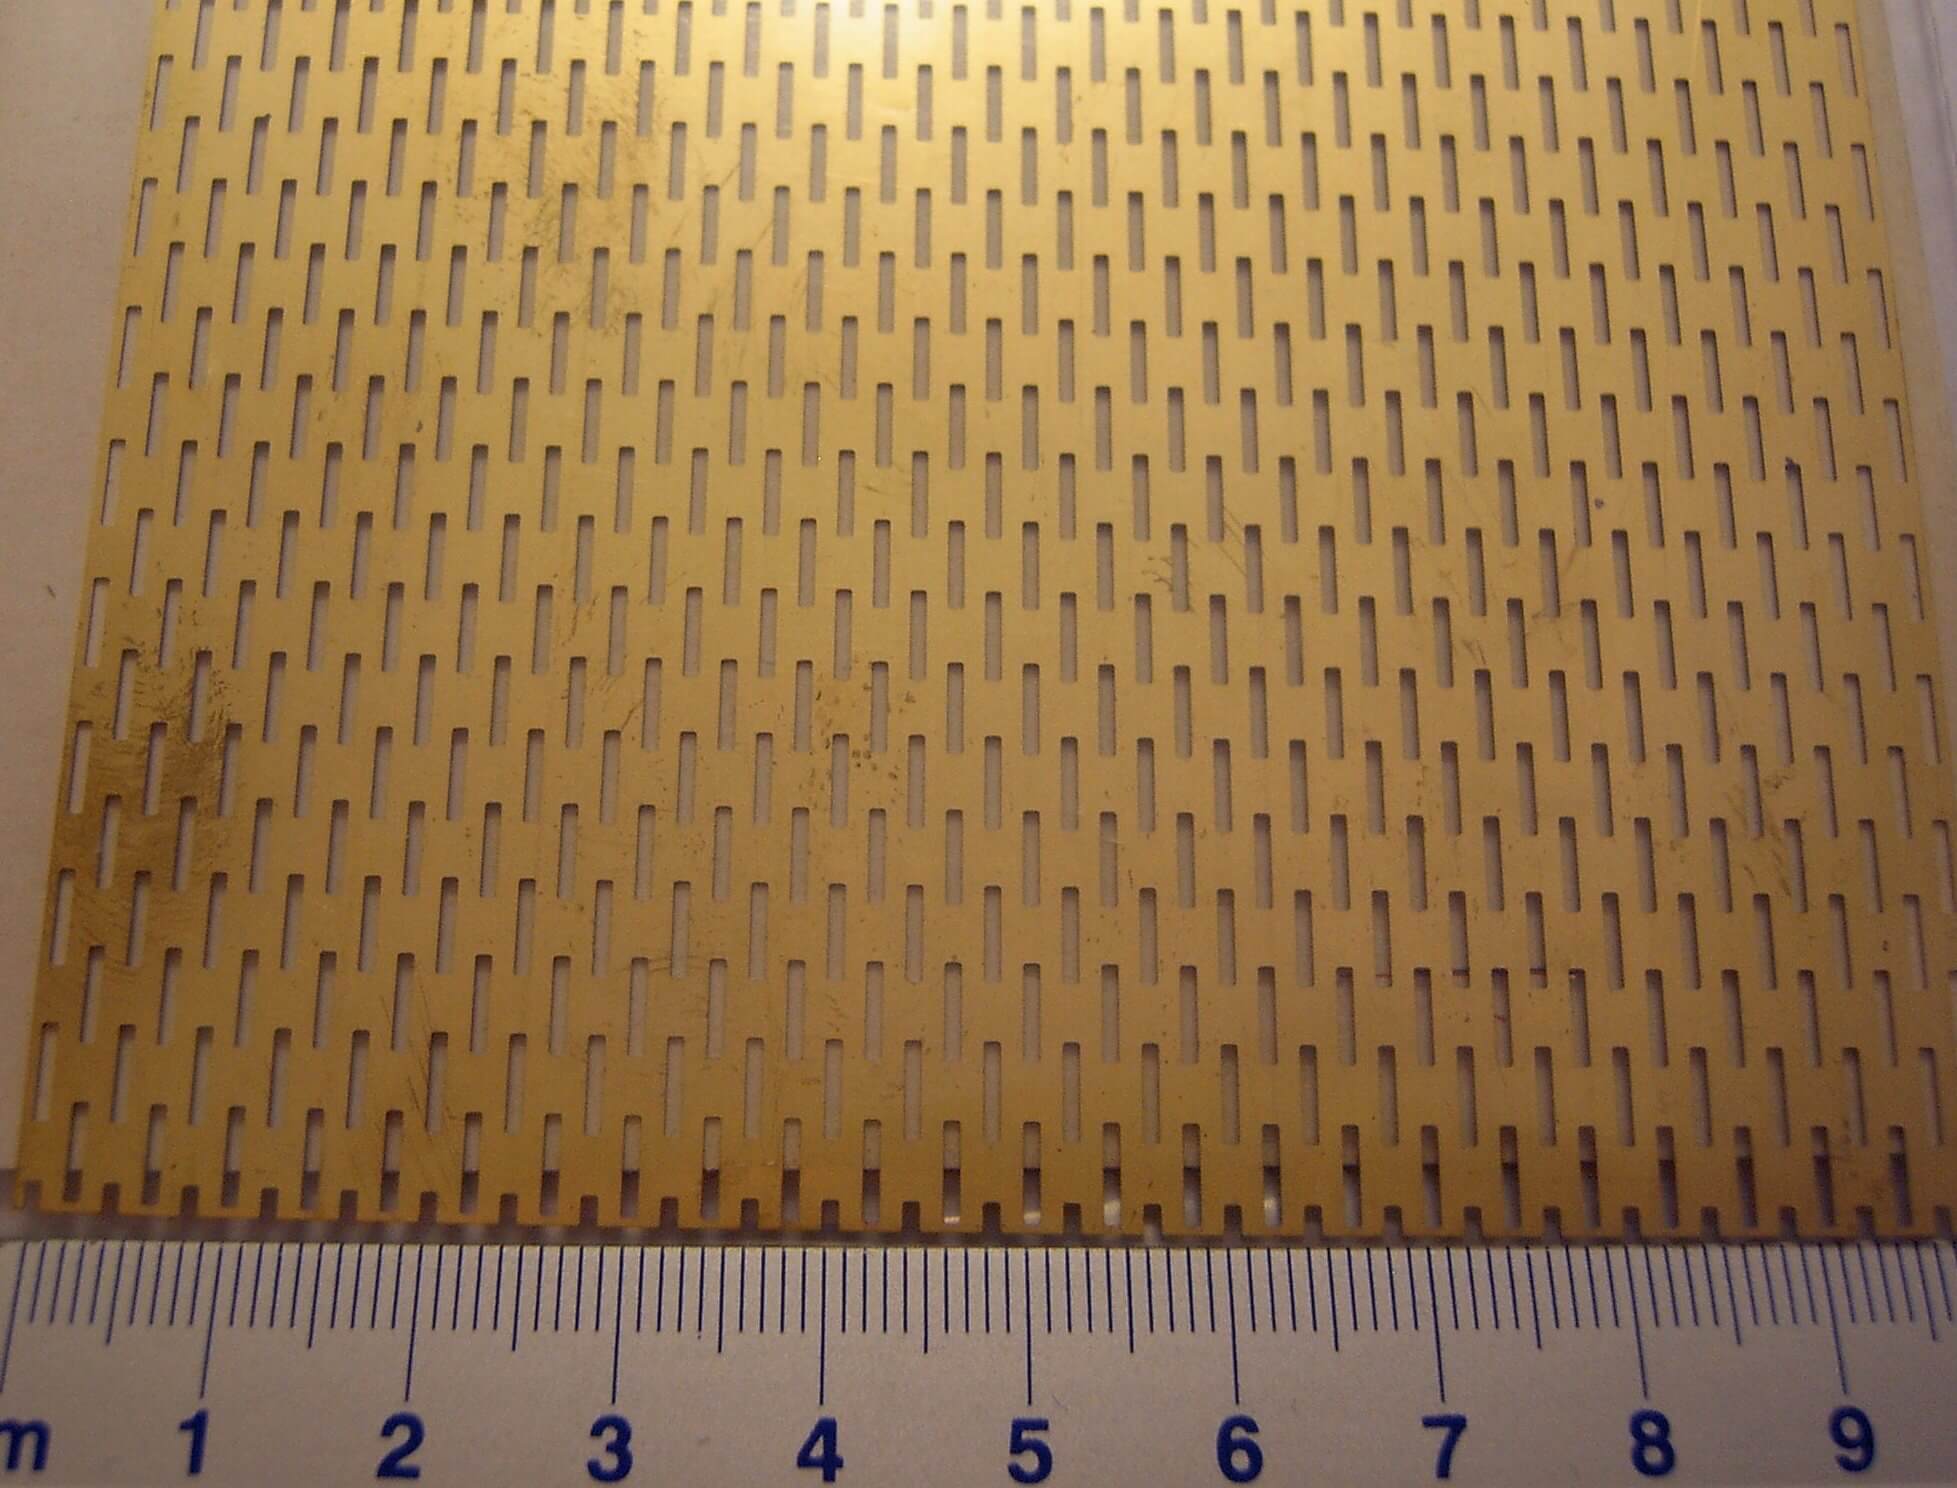 Ontwaken weg te verspillen Sobriquette 1 Trittblech 100x250mm messing. (5736 / 04) strip | Decoratieve platen |  sheets | materiaal | Fechtner Modellbaushop